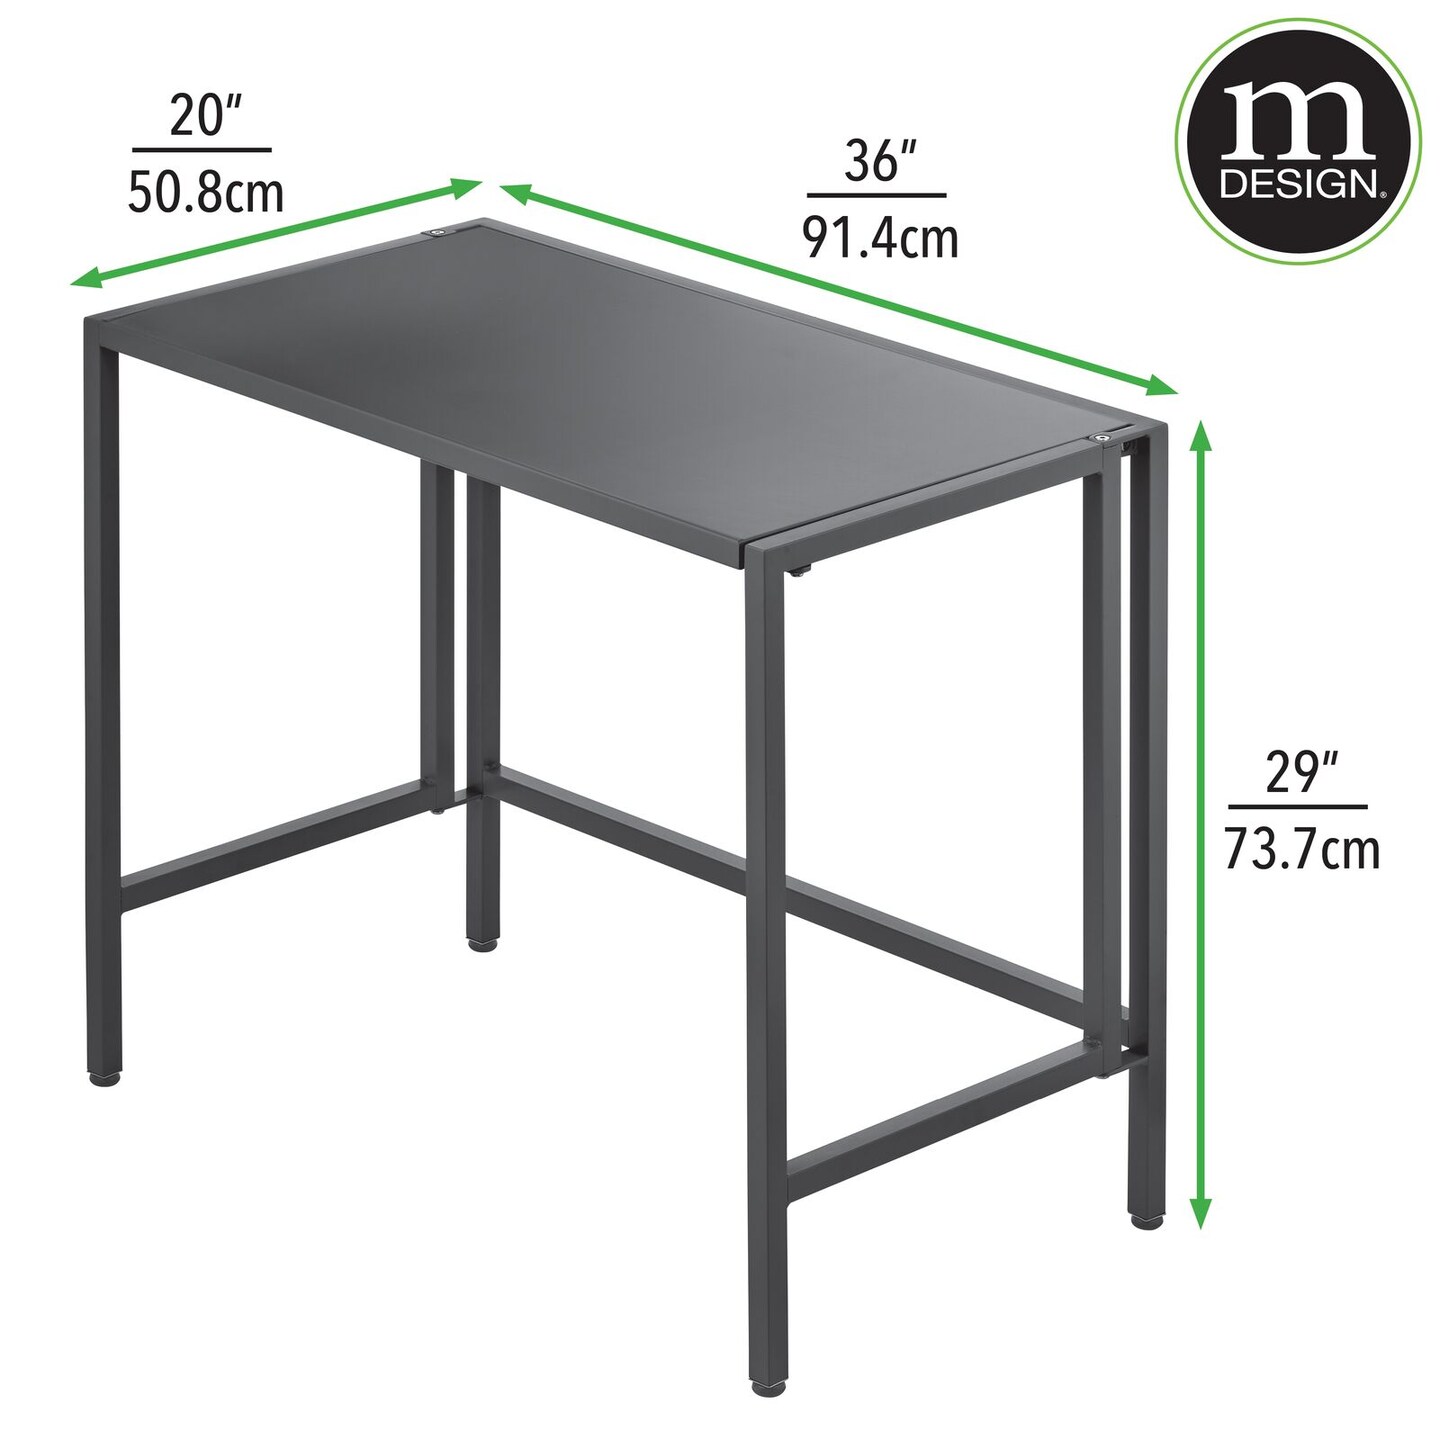 mDesign Folding Desk Adjustable Compact Workstation Metal Table